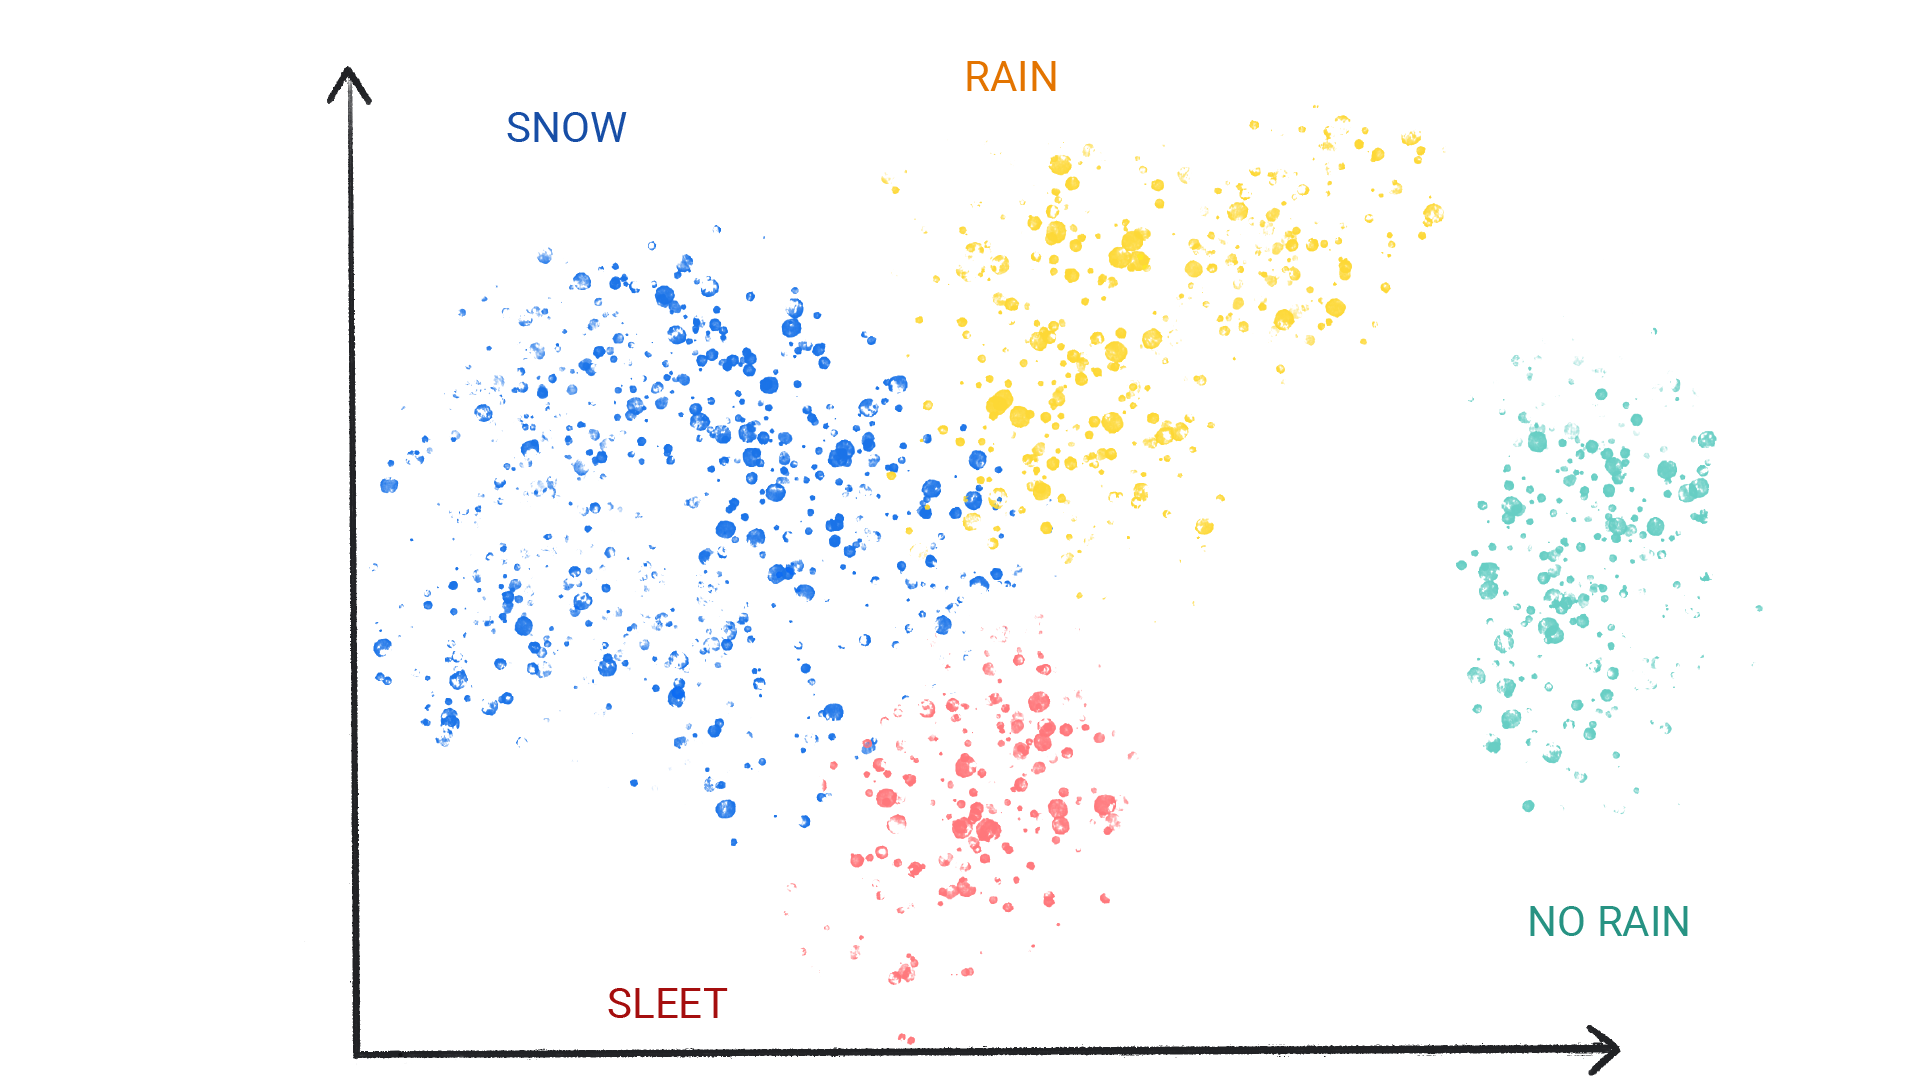 Uma imagem mostrando pontos coloridos em grupos rotulados como neve, chuva, granizo e nenhuma chuva.